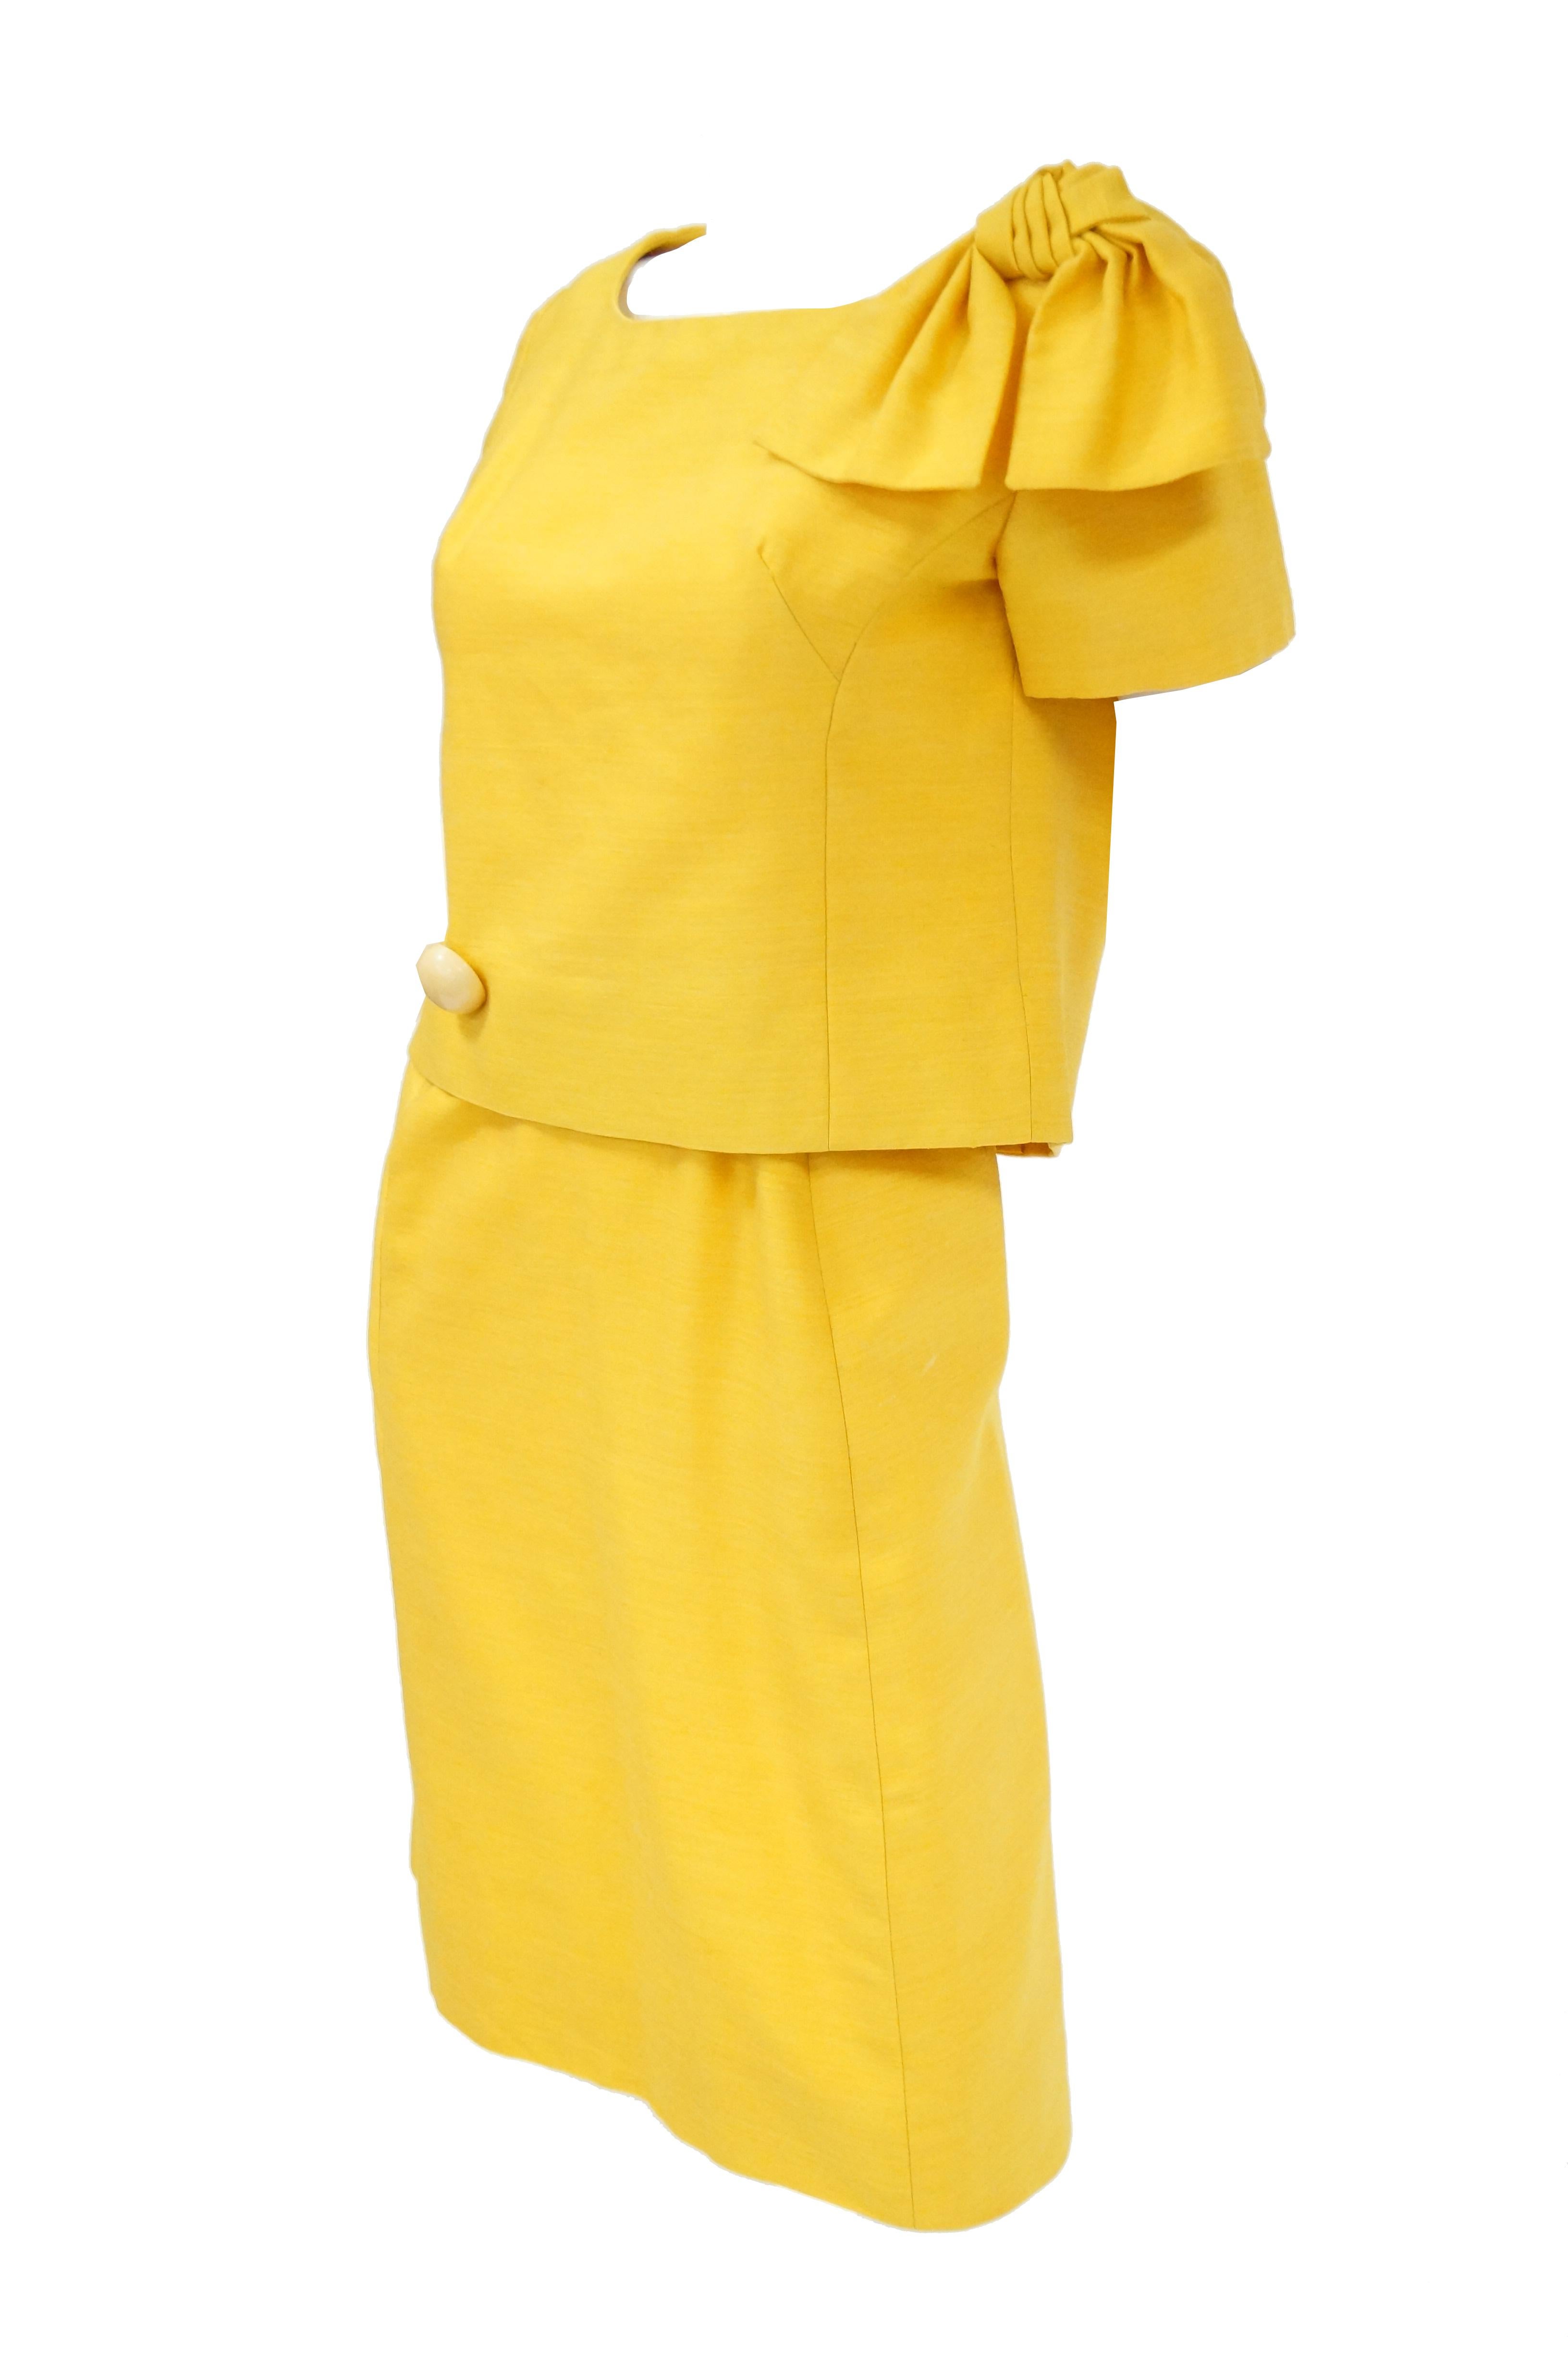 yellow mod dress